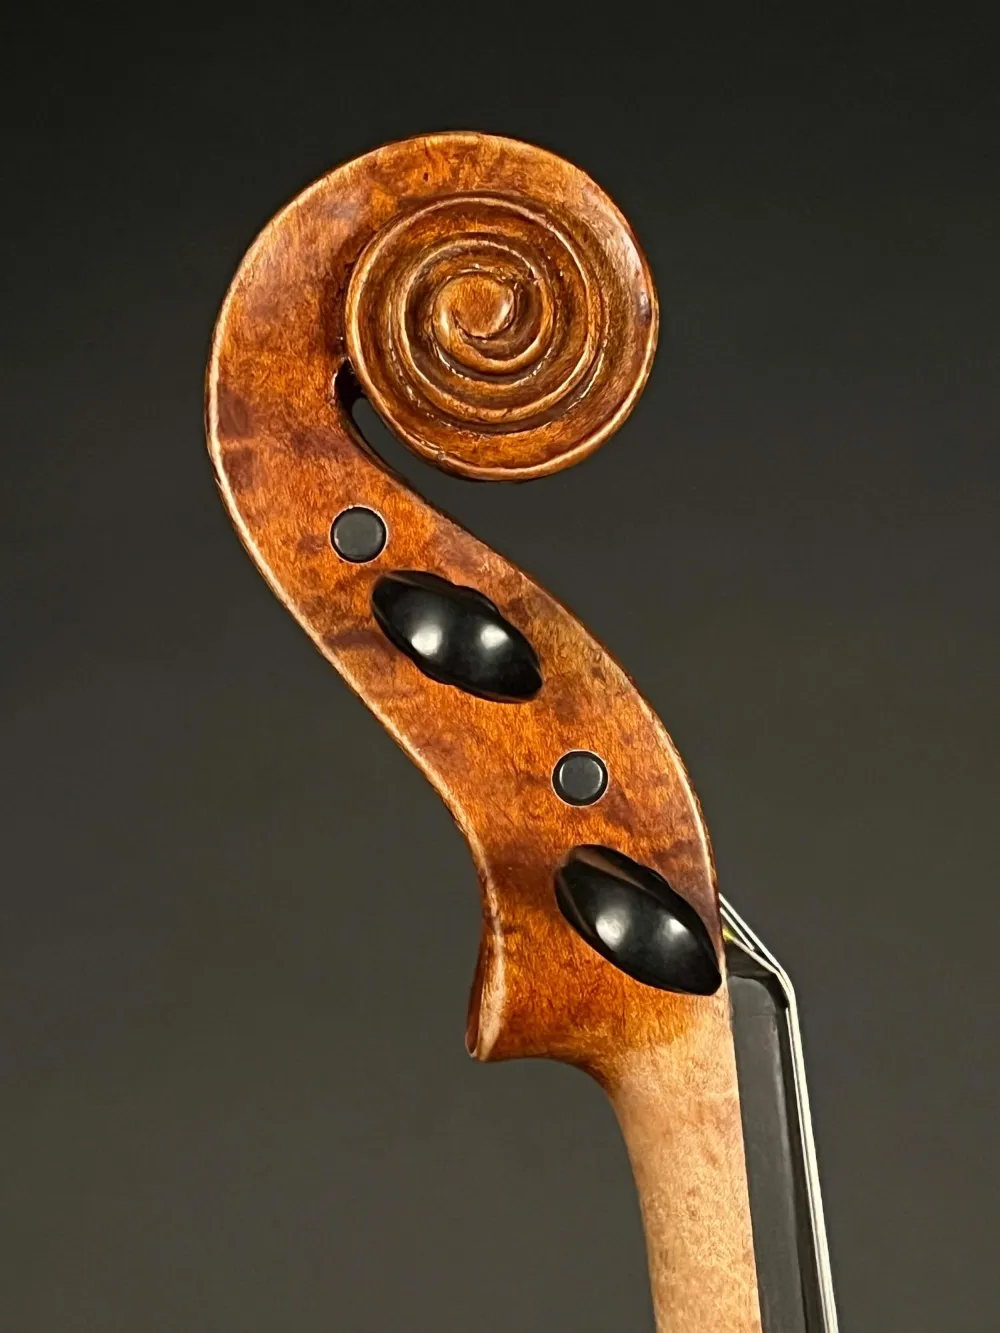 Schnecke-seitlich-rechts-Detailansicht einer Bucur Ioan Geige (Violine) Modell Maggini, Handarbeit 2019